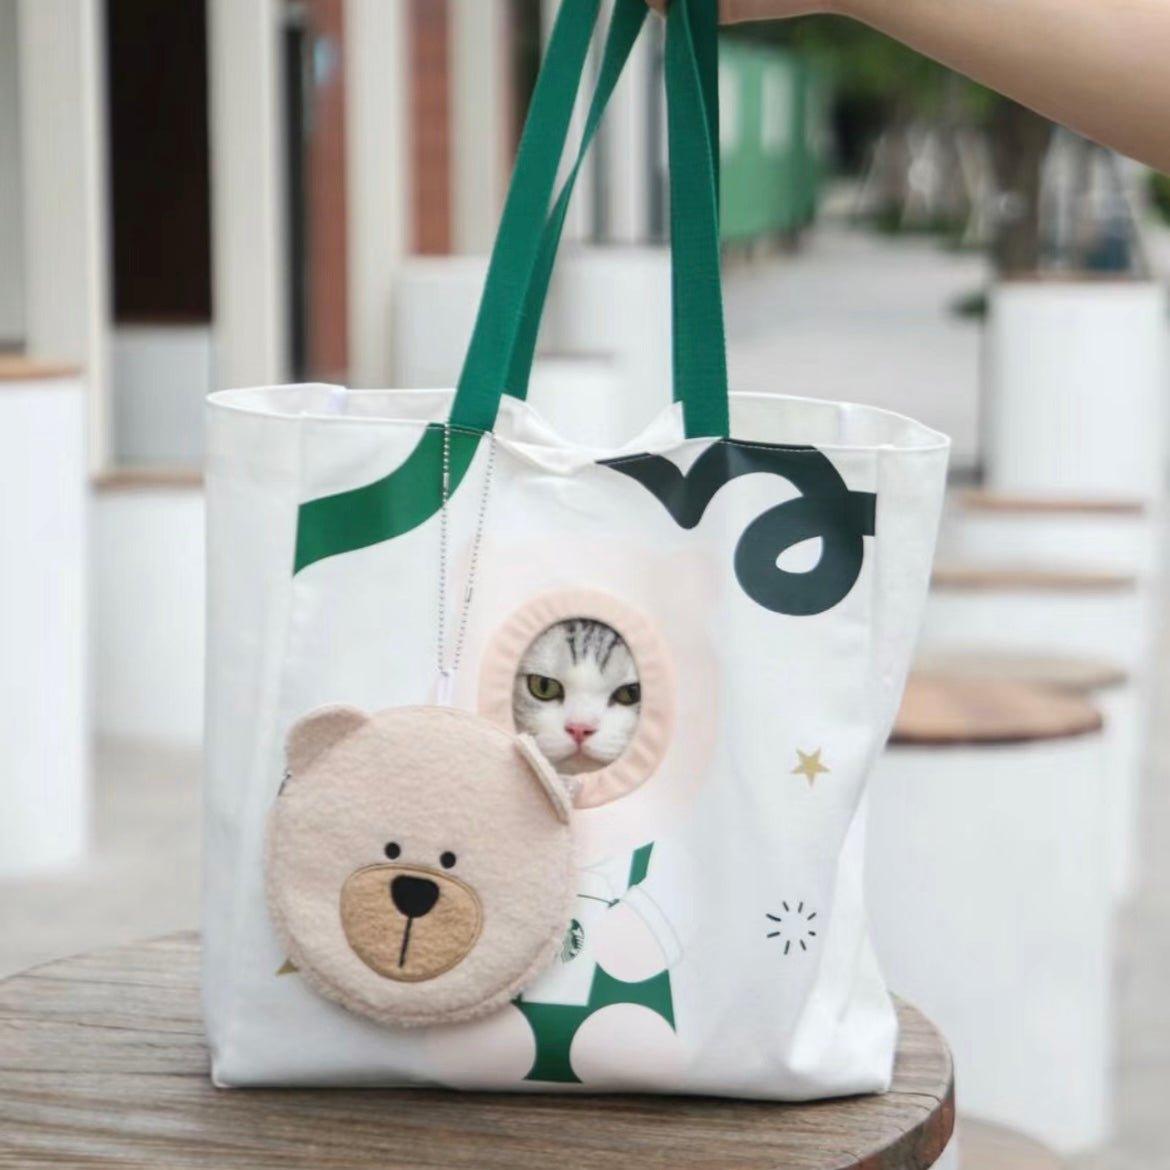 Starbucks Pet Travel Carrying Bag - Ann Ann Starbucks